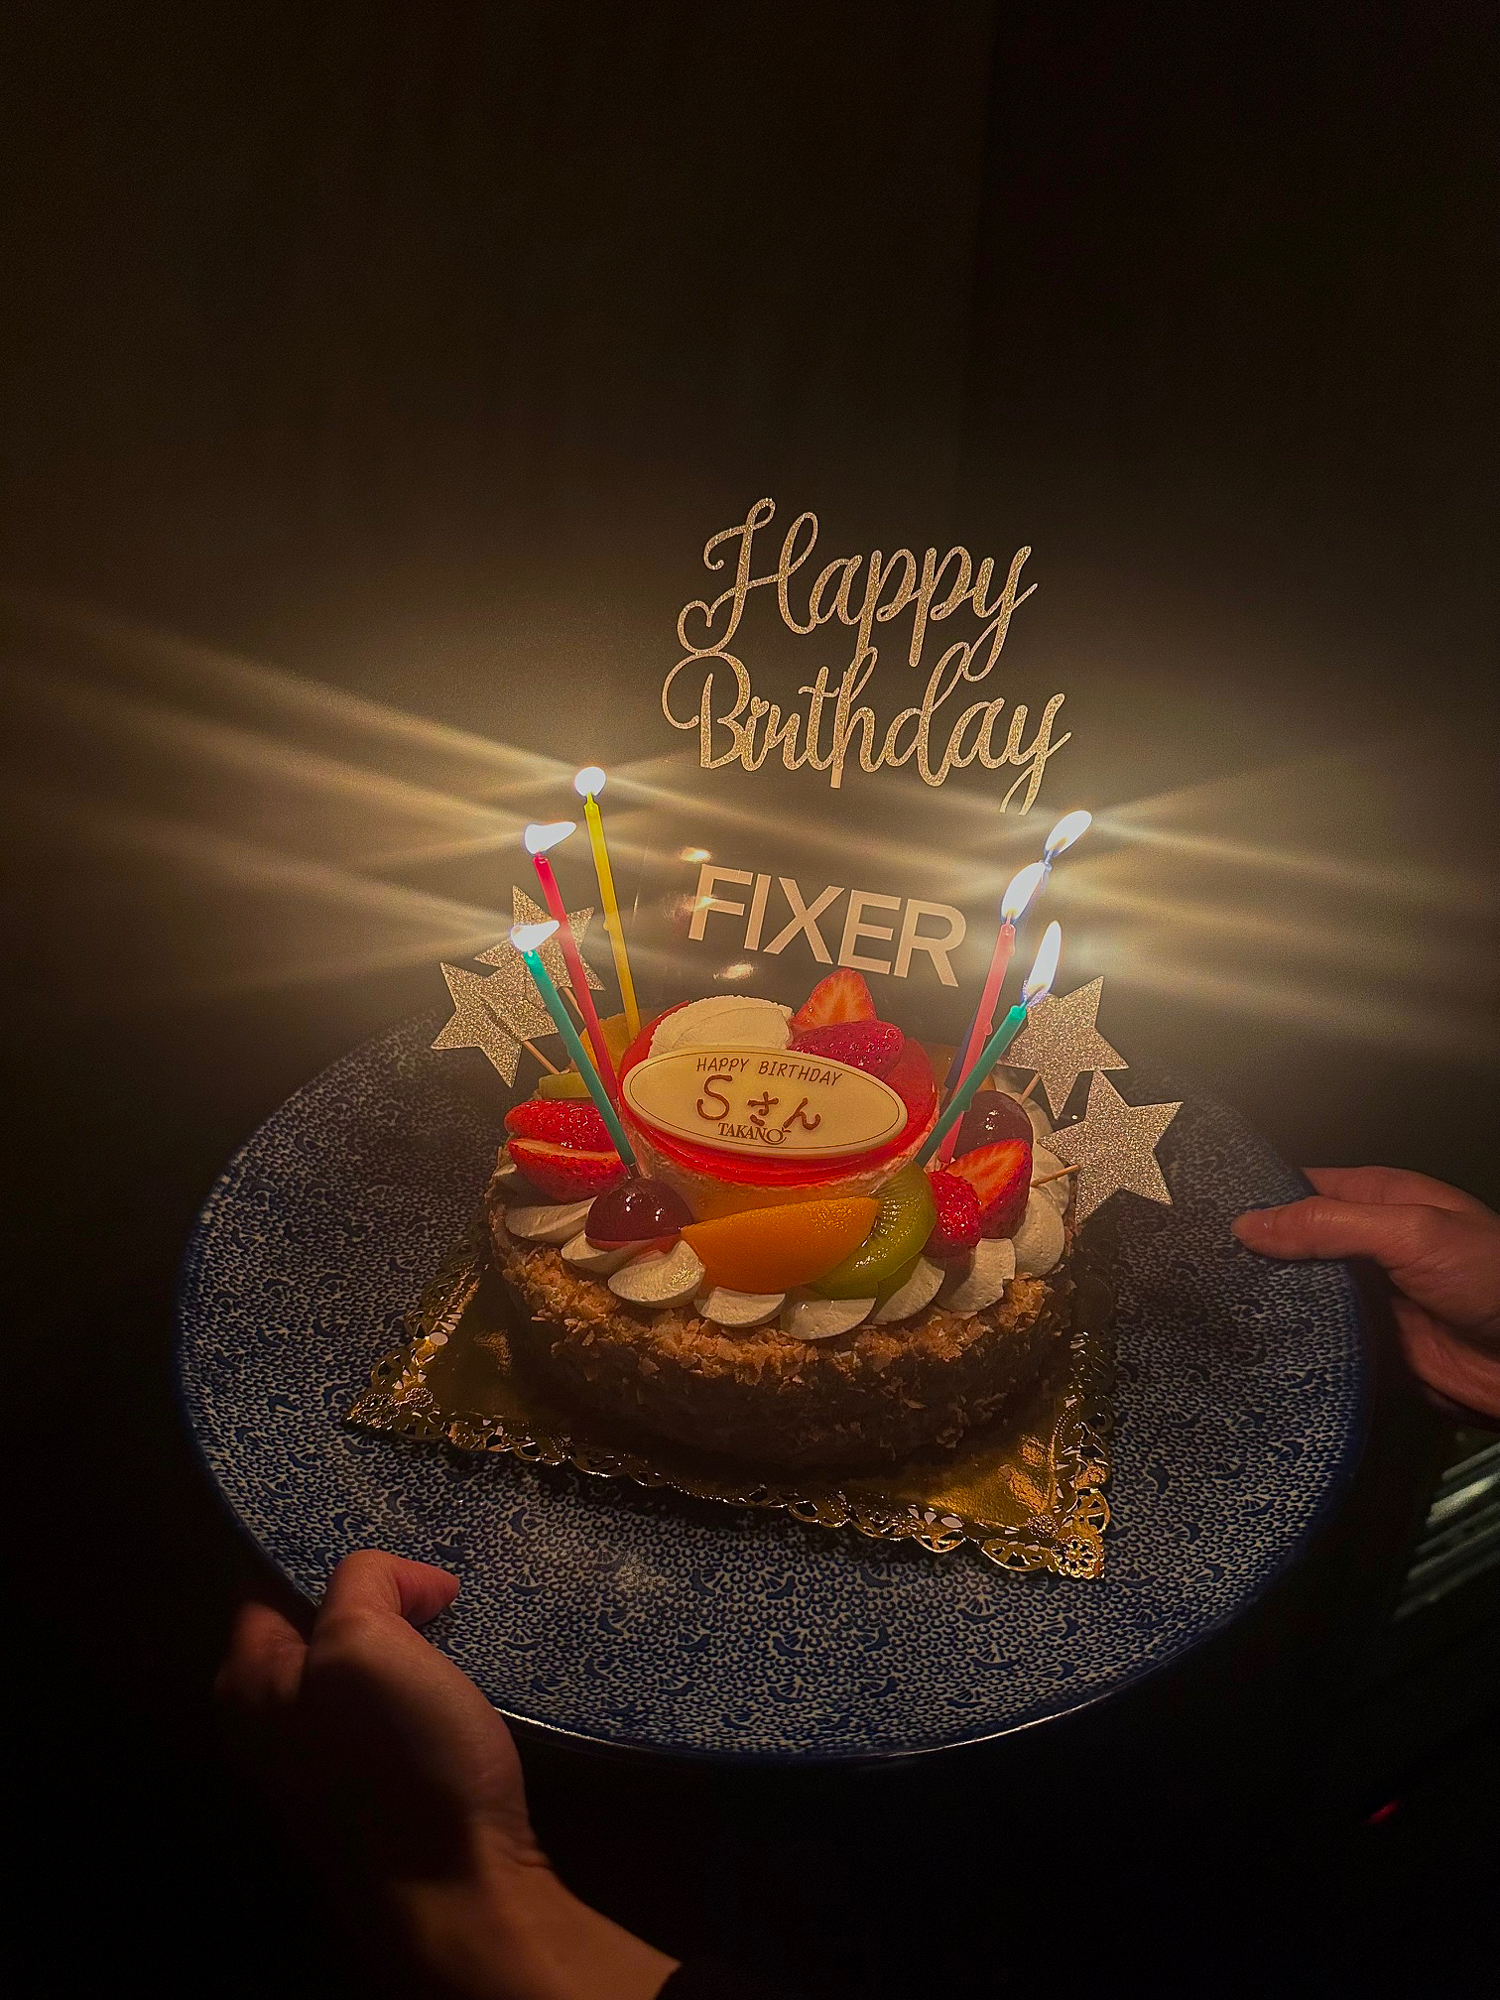 Happy Birthday 誕生日 2024年2月15日 FIXER フィクサー おめでとう ありがとうございます ケーキ 誕生日ケーキ iPhone 羊乃助 ラムノスケ 愛知 名古屋 Alto e Diritto altoediritto アルトエデリット